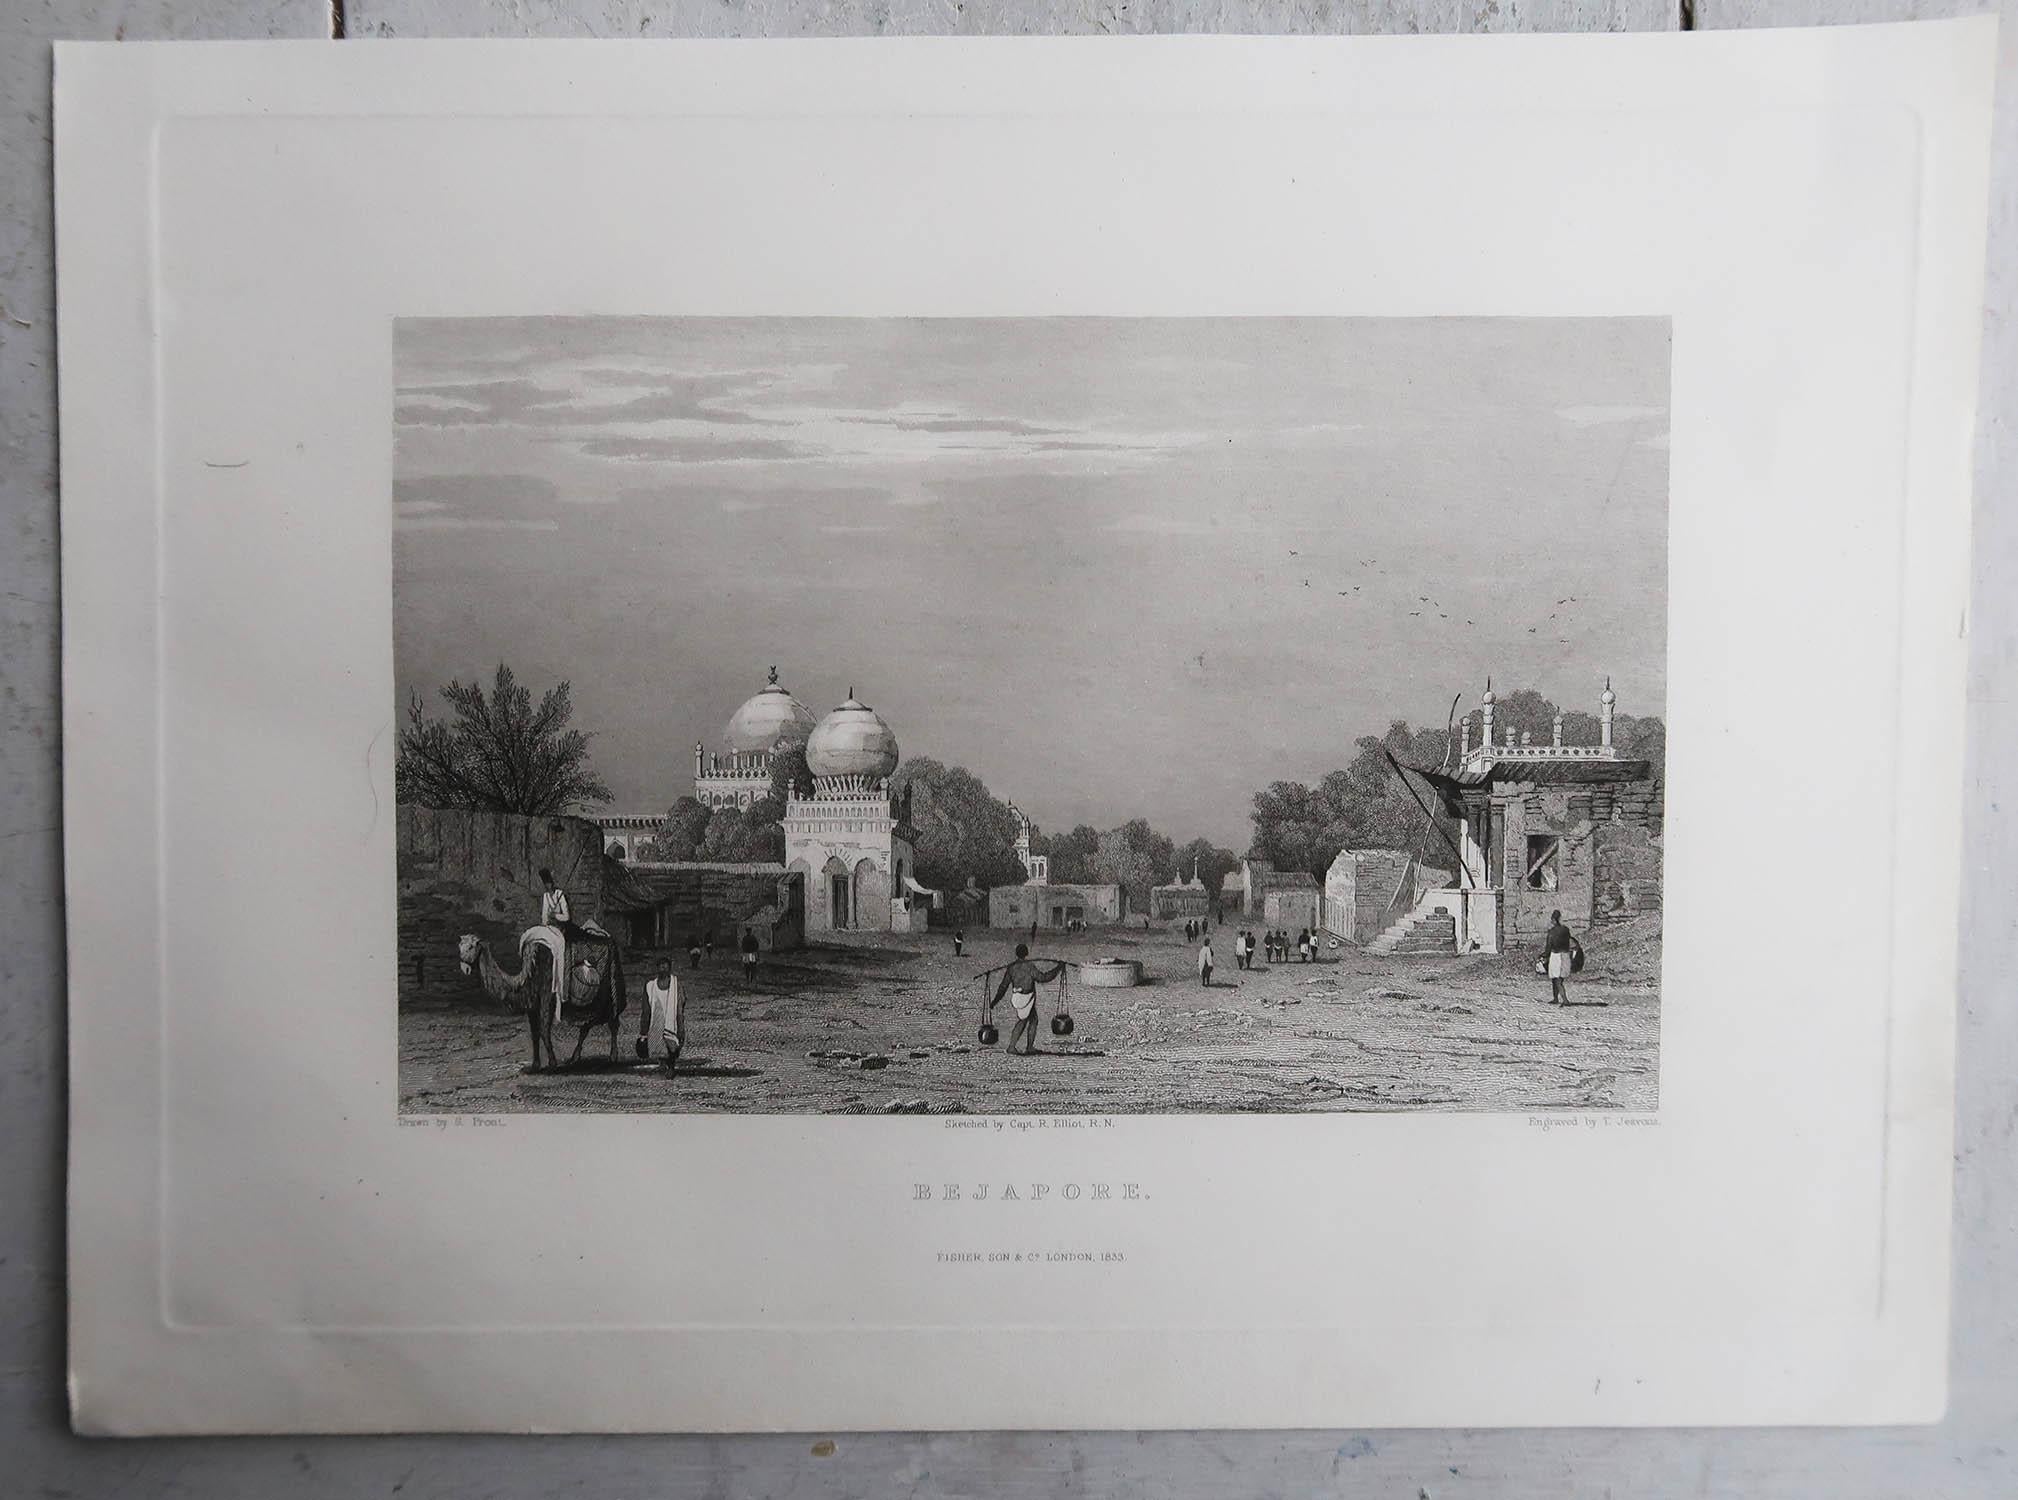 Merveilleux ensemble de 12  Impressions de l'Inde

Gravures sur acier d'après Turner, Prout, Shotter Boys etc. 

Publié par Fisher 1830-1840.

La plupart d'entre eux sont sortis ensemble.

Non encadré.





